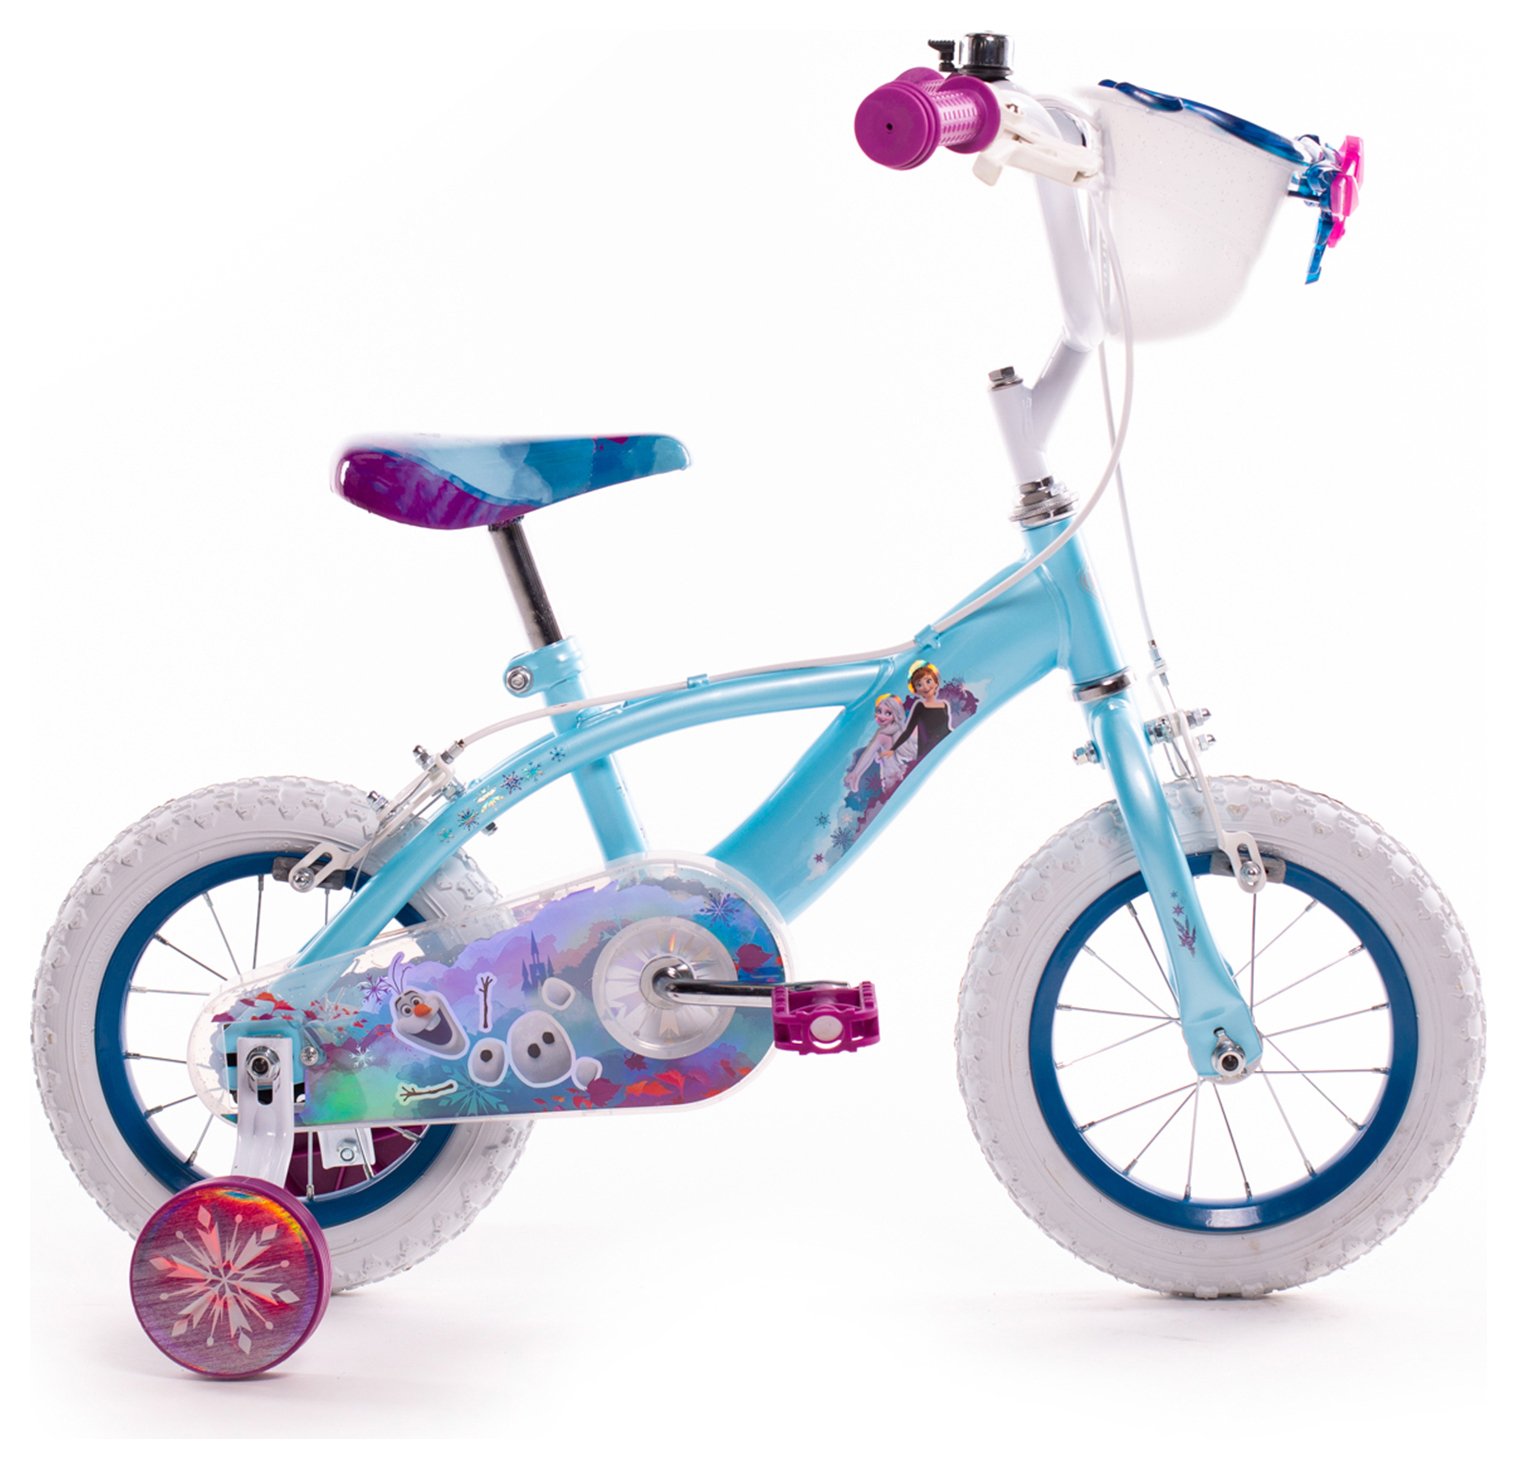 Huffy 12 inch Wheel Size Disney Frozen Kids Bike